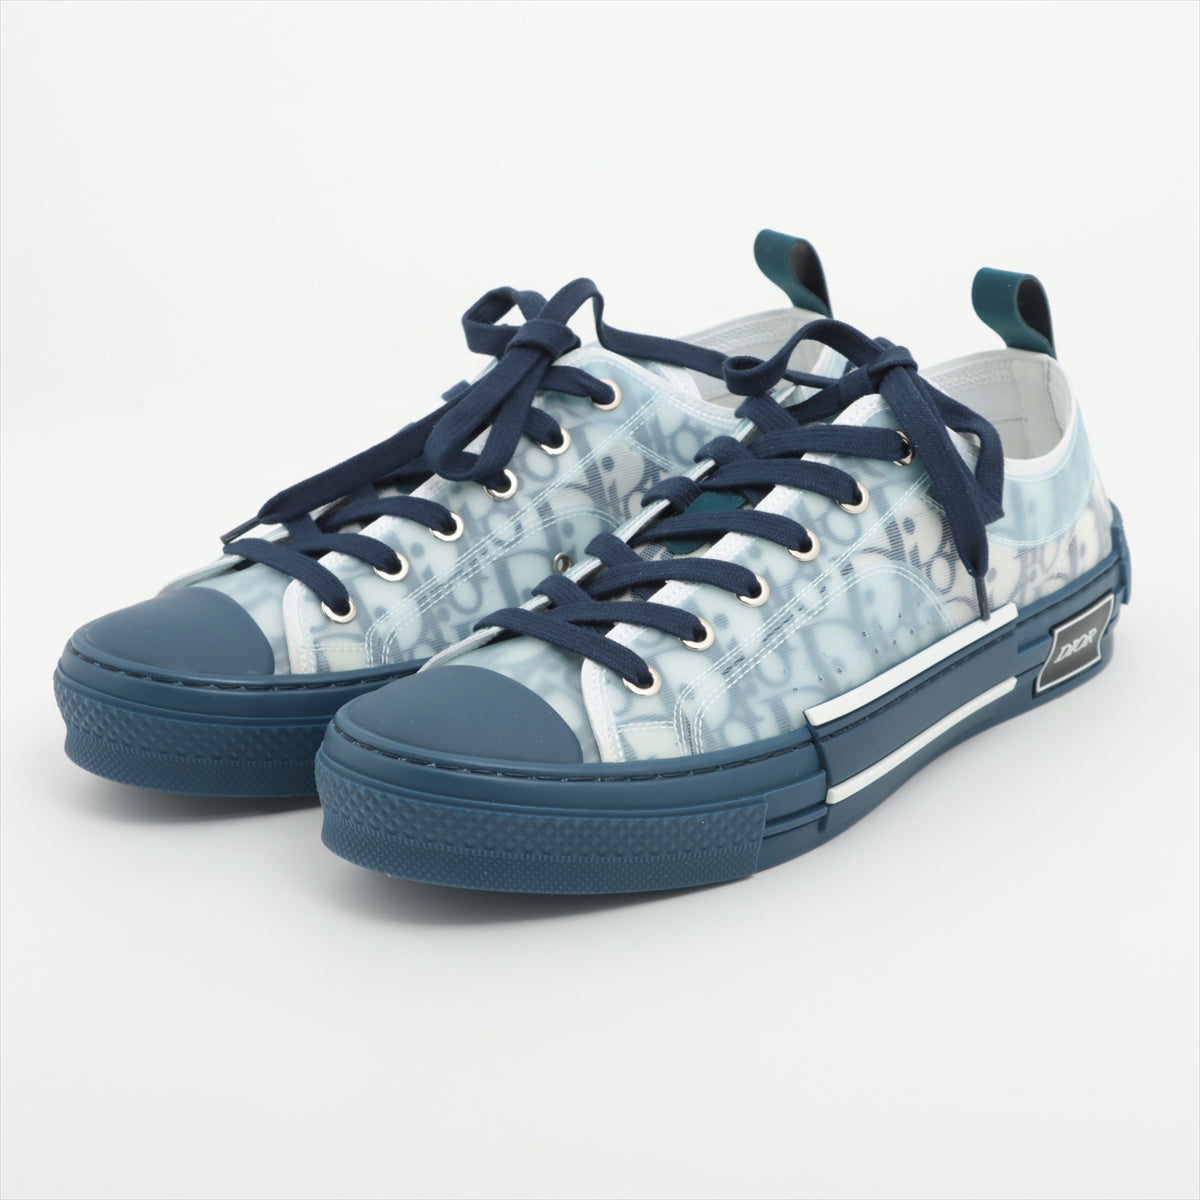 Dior Oblique PVC x rubber Sneakers 40 Men's Navy Blue 20CDC